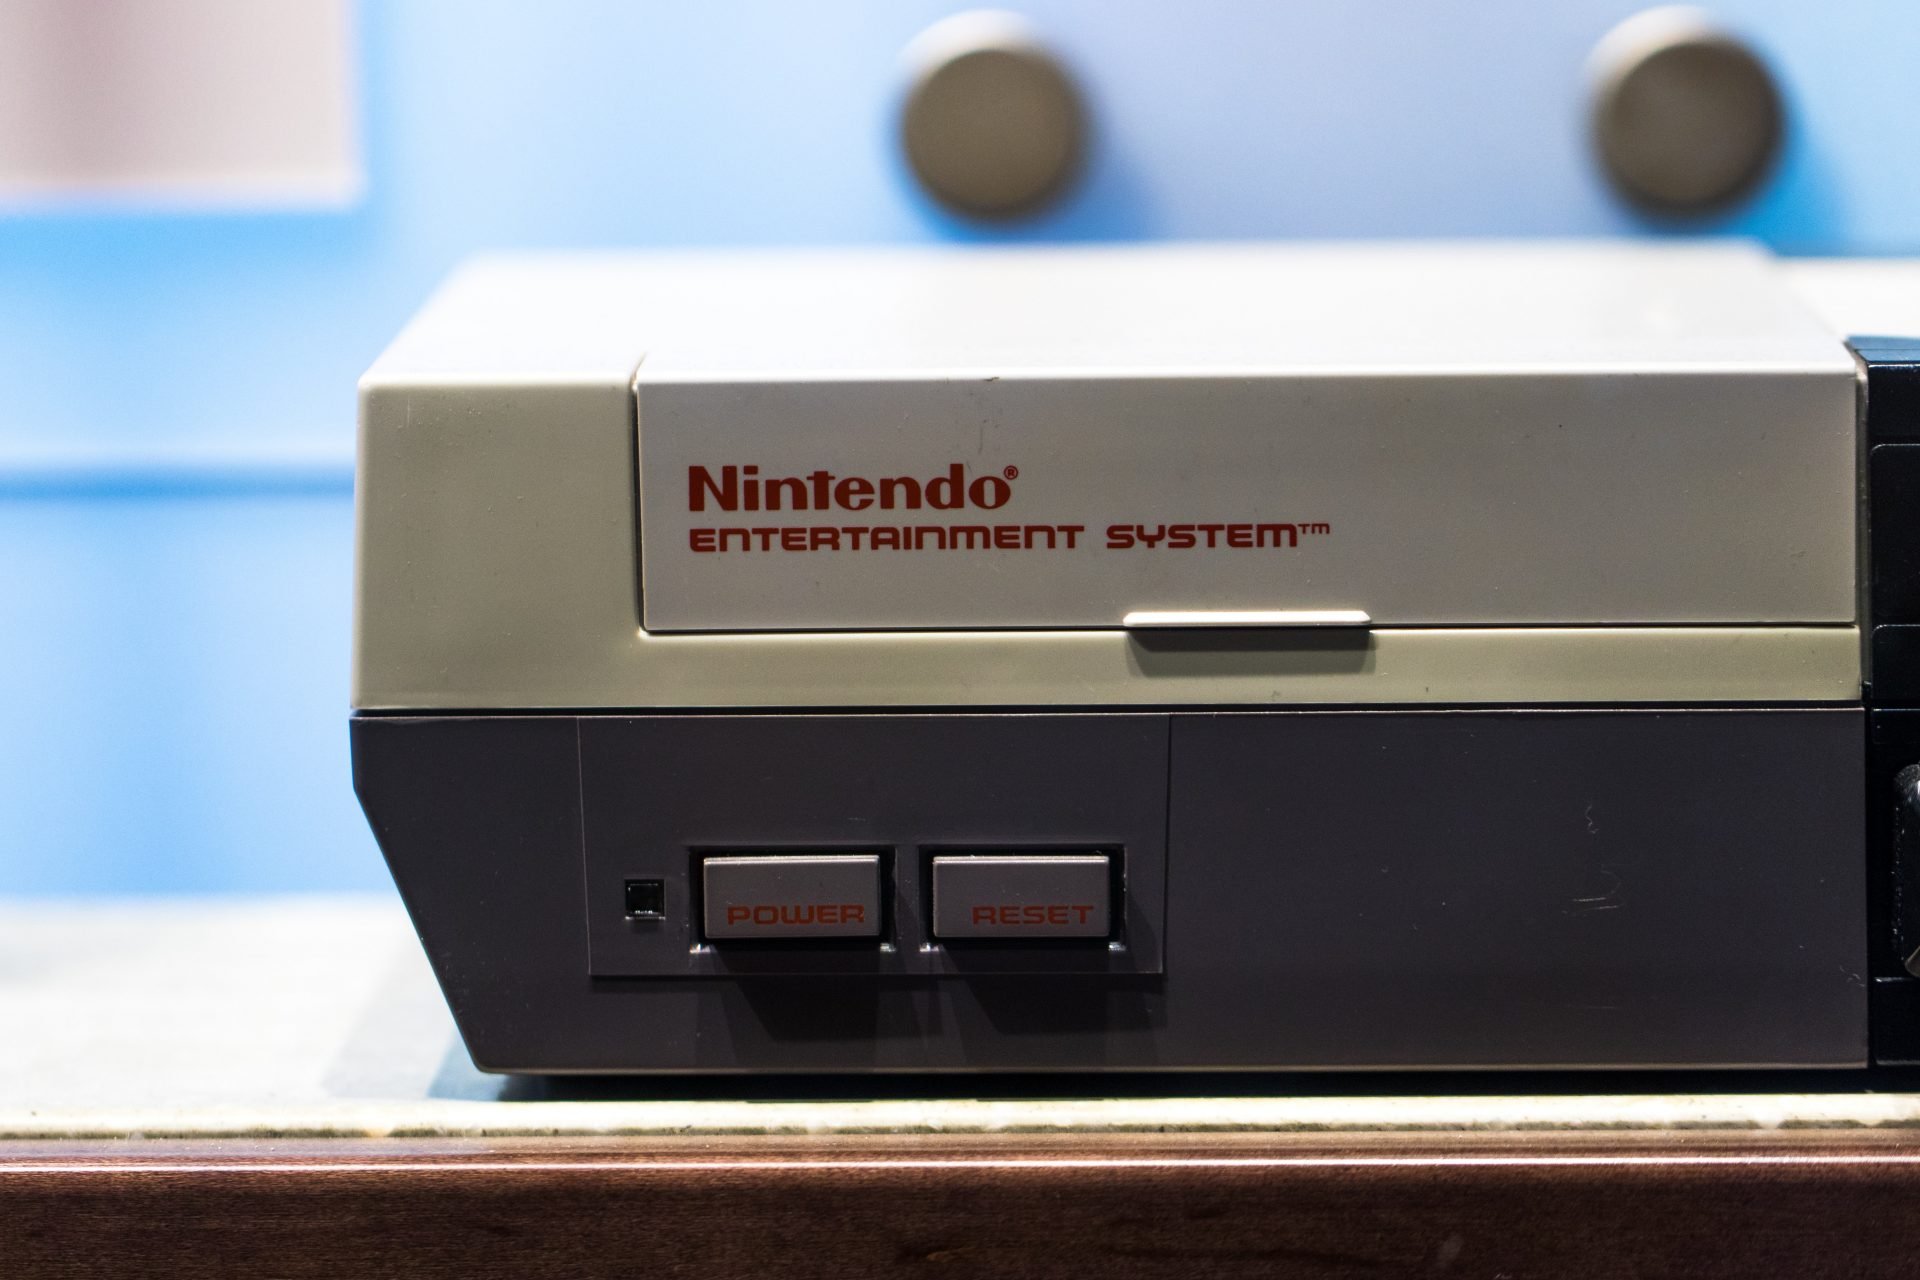 Console da Nintendo, empresa que foi cogitada para ser adquirida pela Microsoft no passado